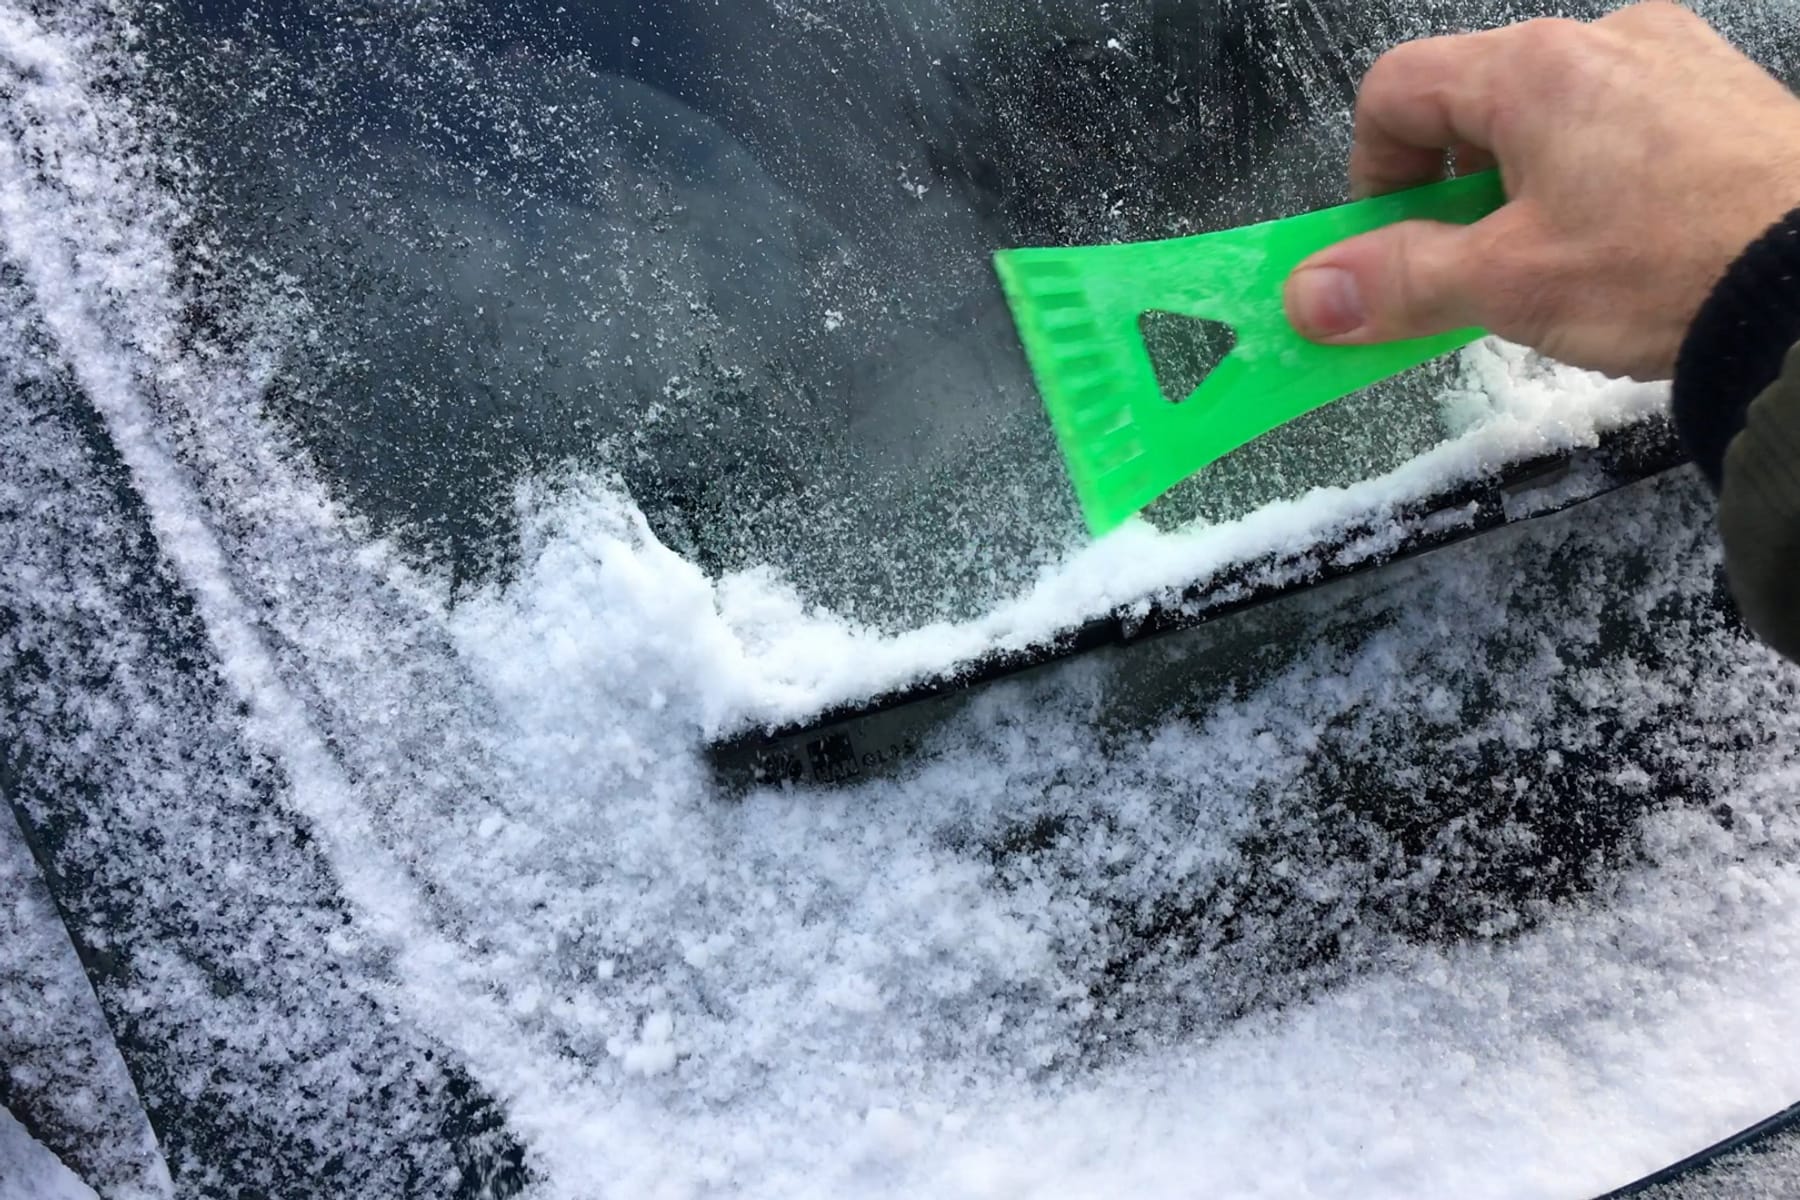 Autoscheibe innen gefroren: Das können Sie tun